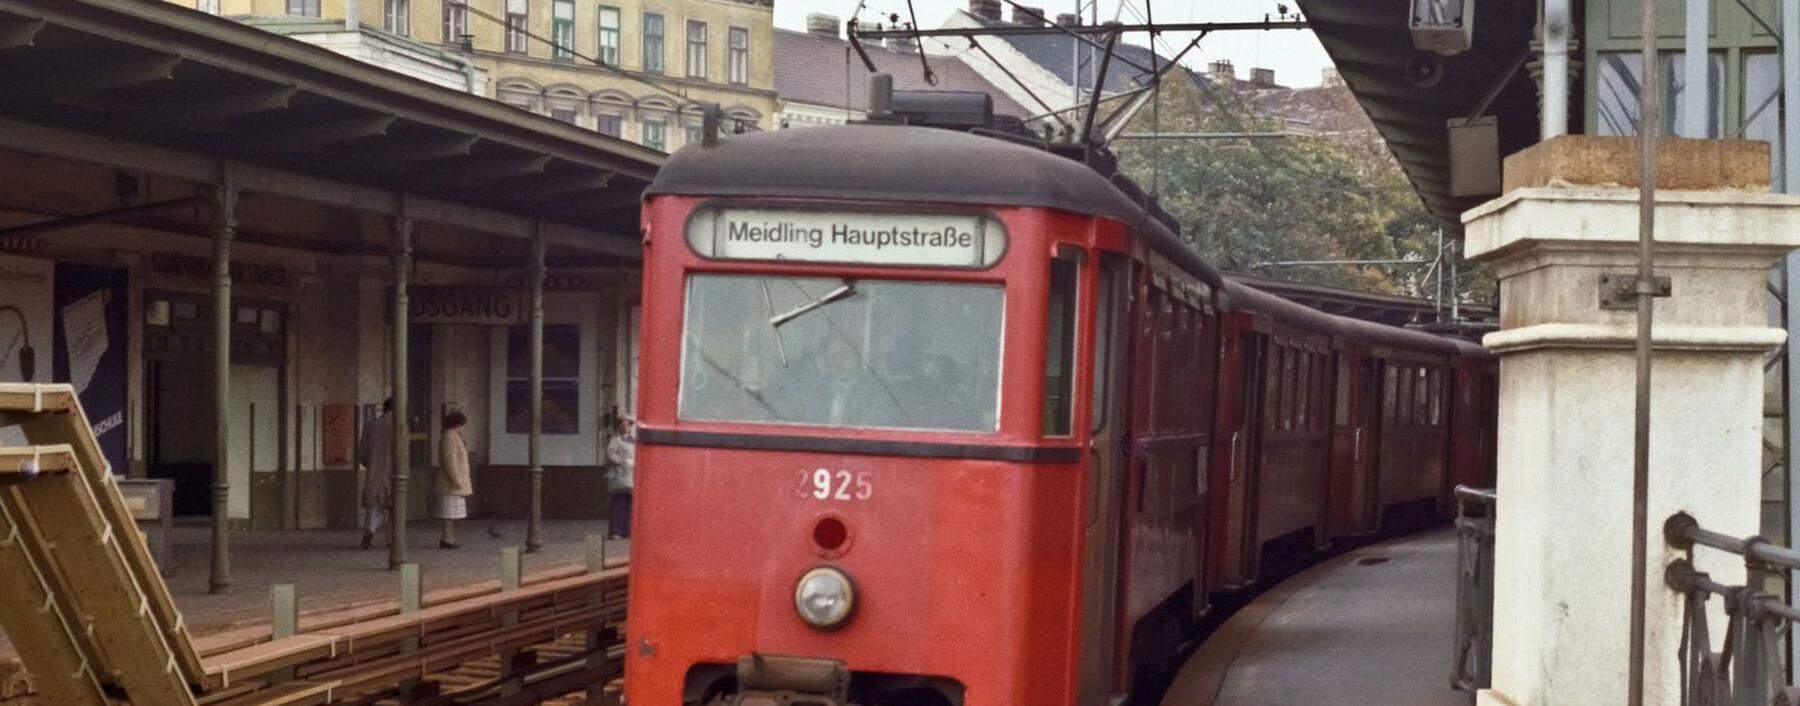 Stadtbahn. Es war ein regelrechtes Rumpeln, es war langsam und unkomfortabel. Die Stadtbahn war ein antiquiertes Relikt. Erst Ende der 1980er-Jahre kam der Umbau zur U-Bahn. 